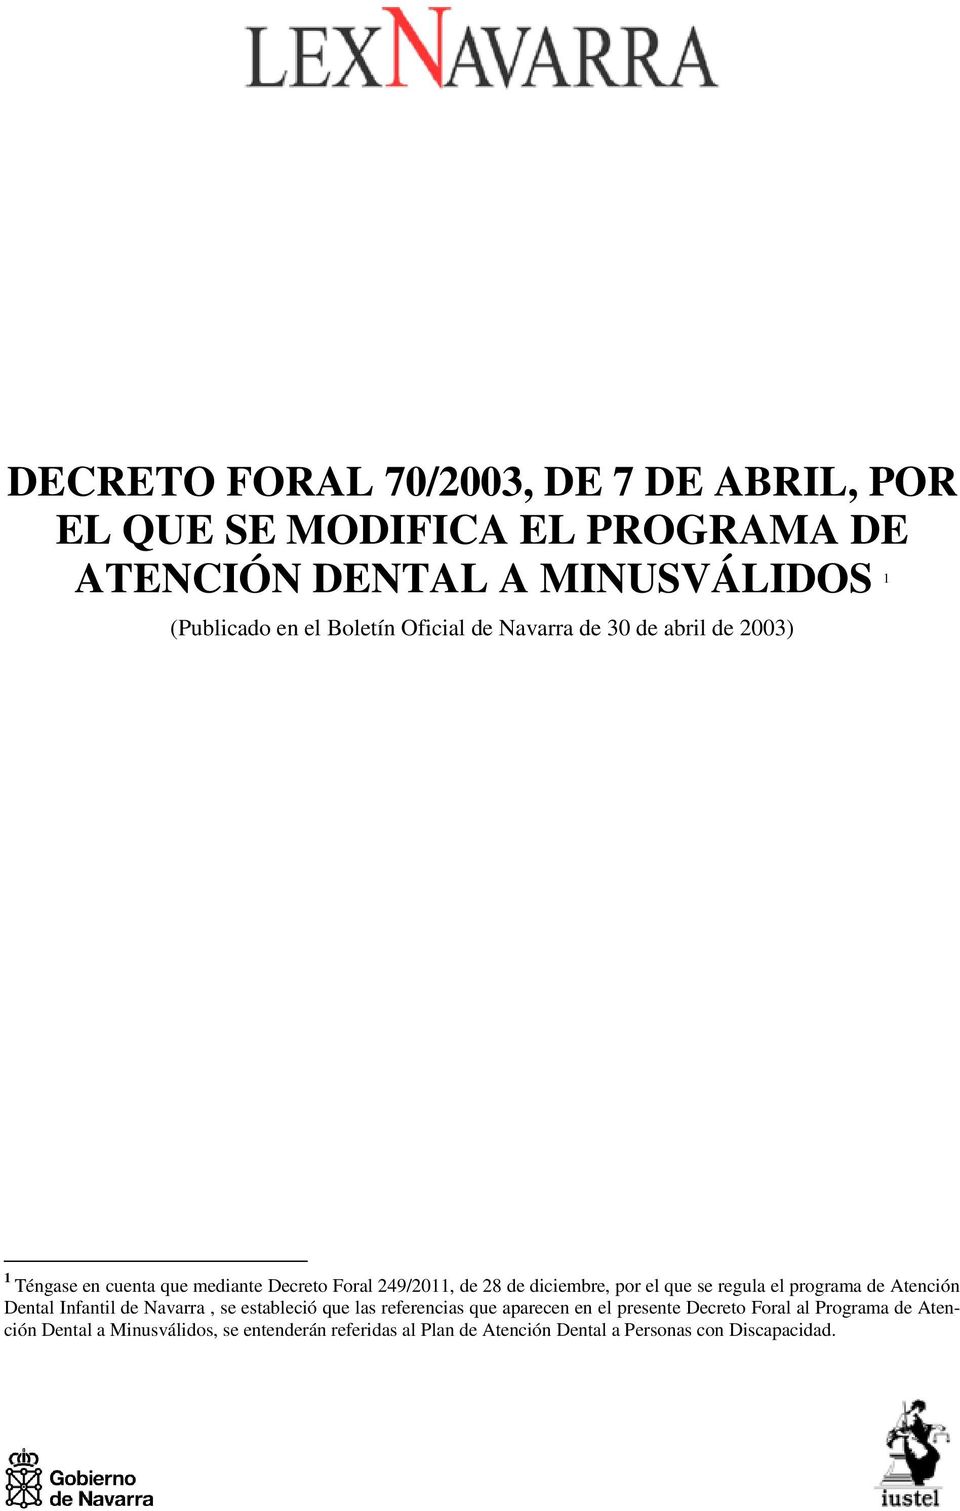 el que se regula el programa de Atención Dental Infantil de Navarra, se estableció que las referencias que aparecen en el presente